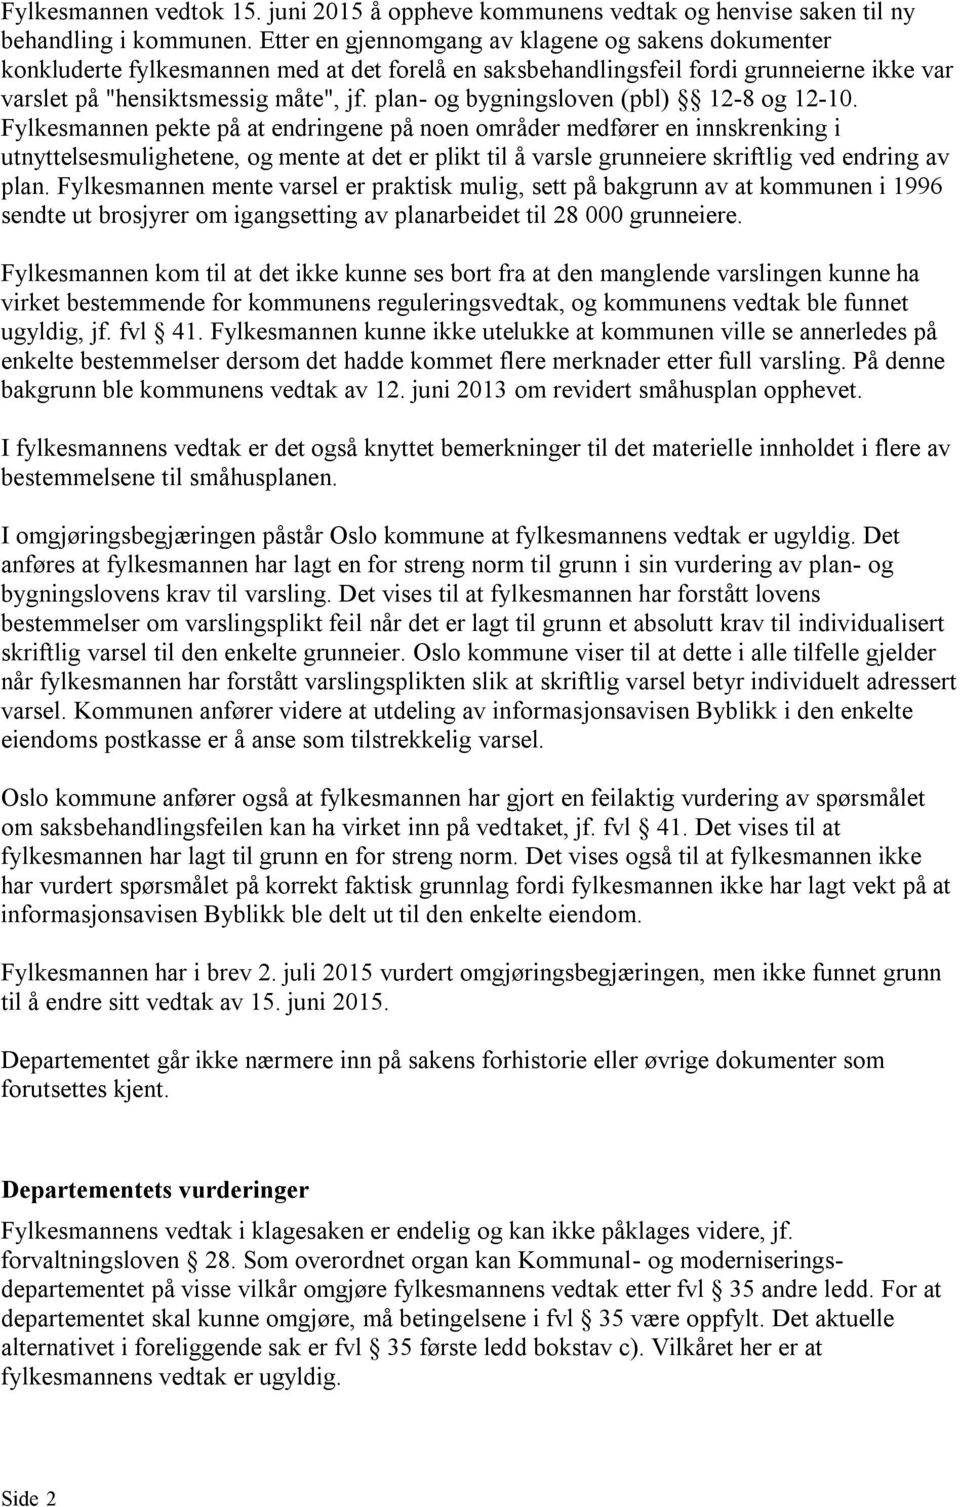 plan- og bygningsloven (pbl) 12-8 og 12-10.